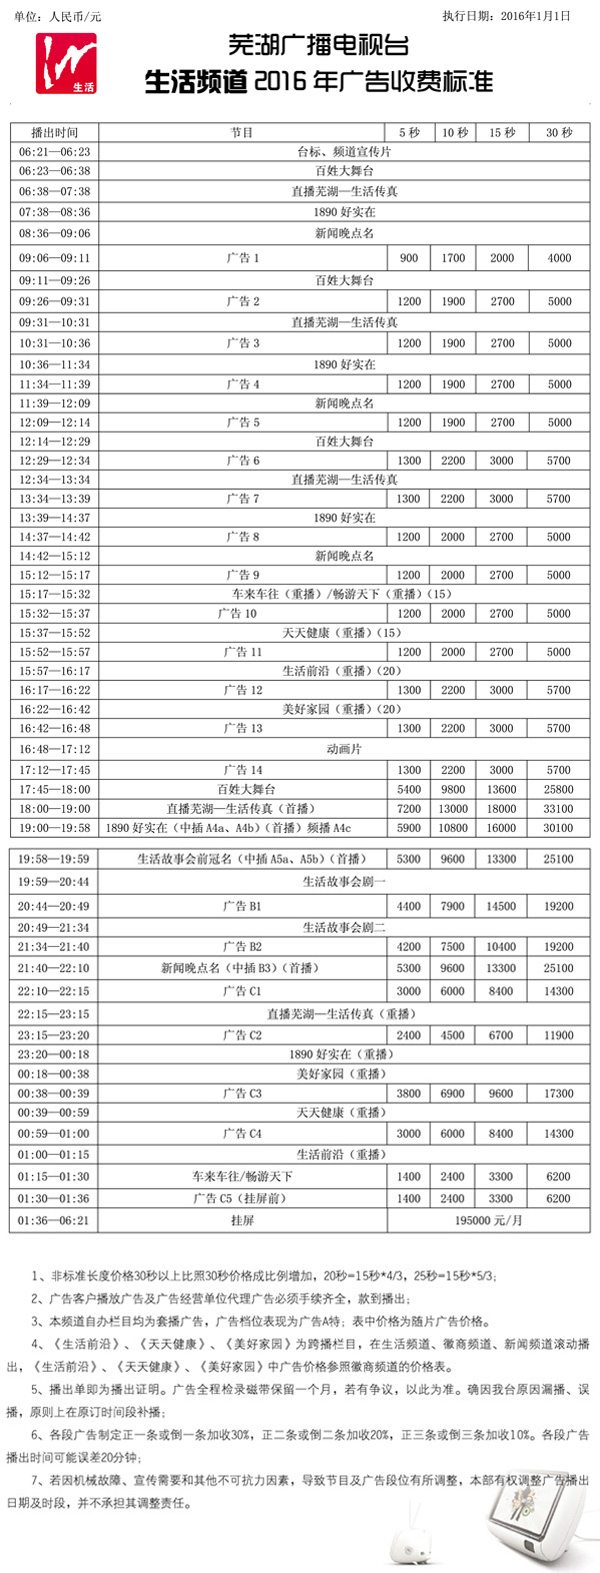 芜湖电视台经济生活频道2016年广告价格